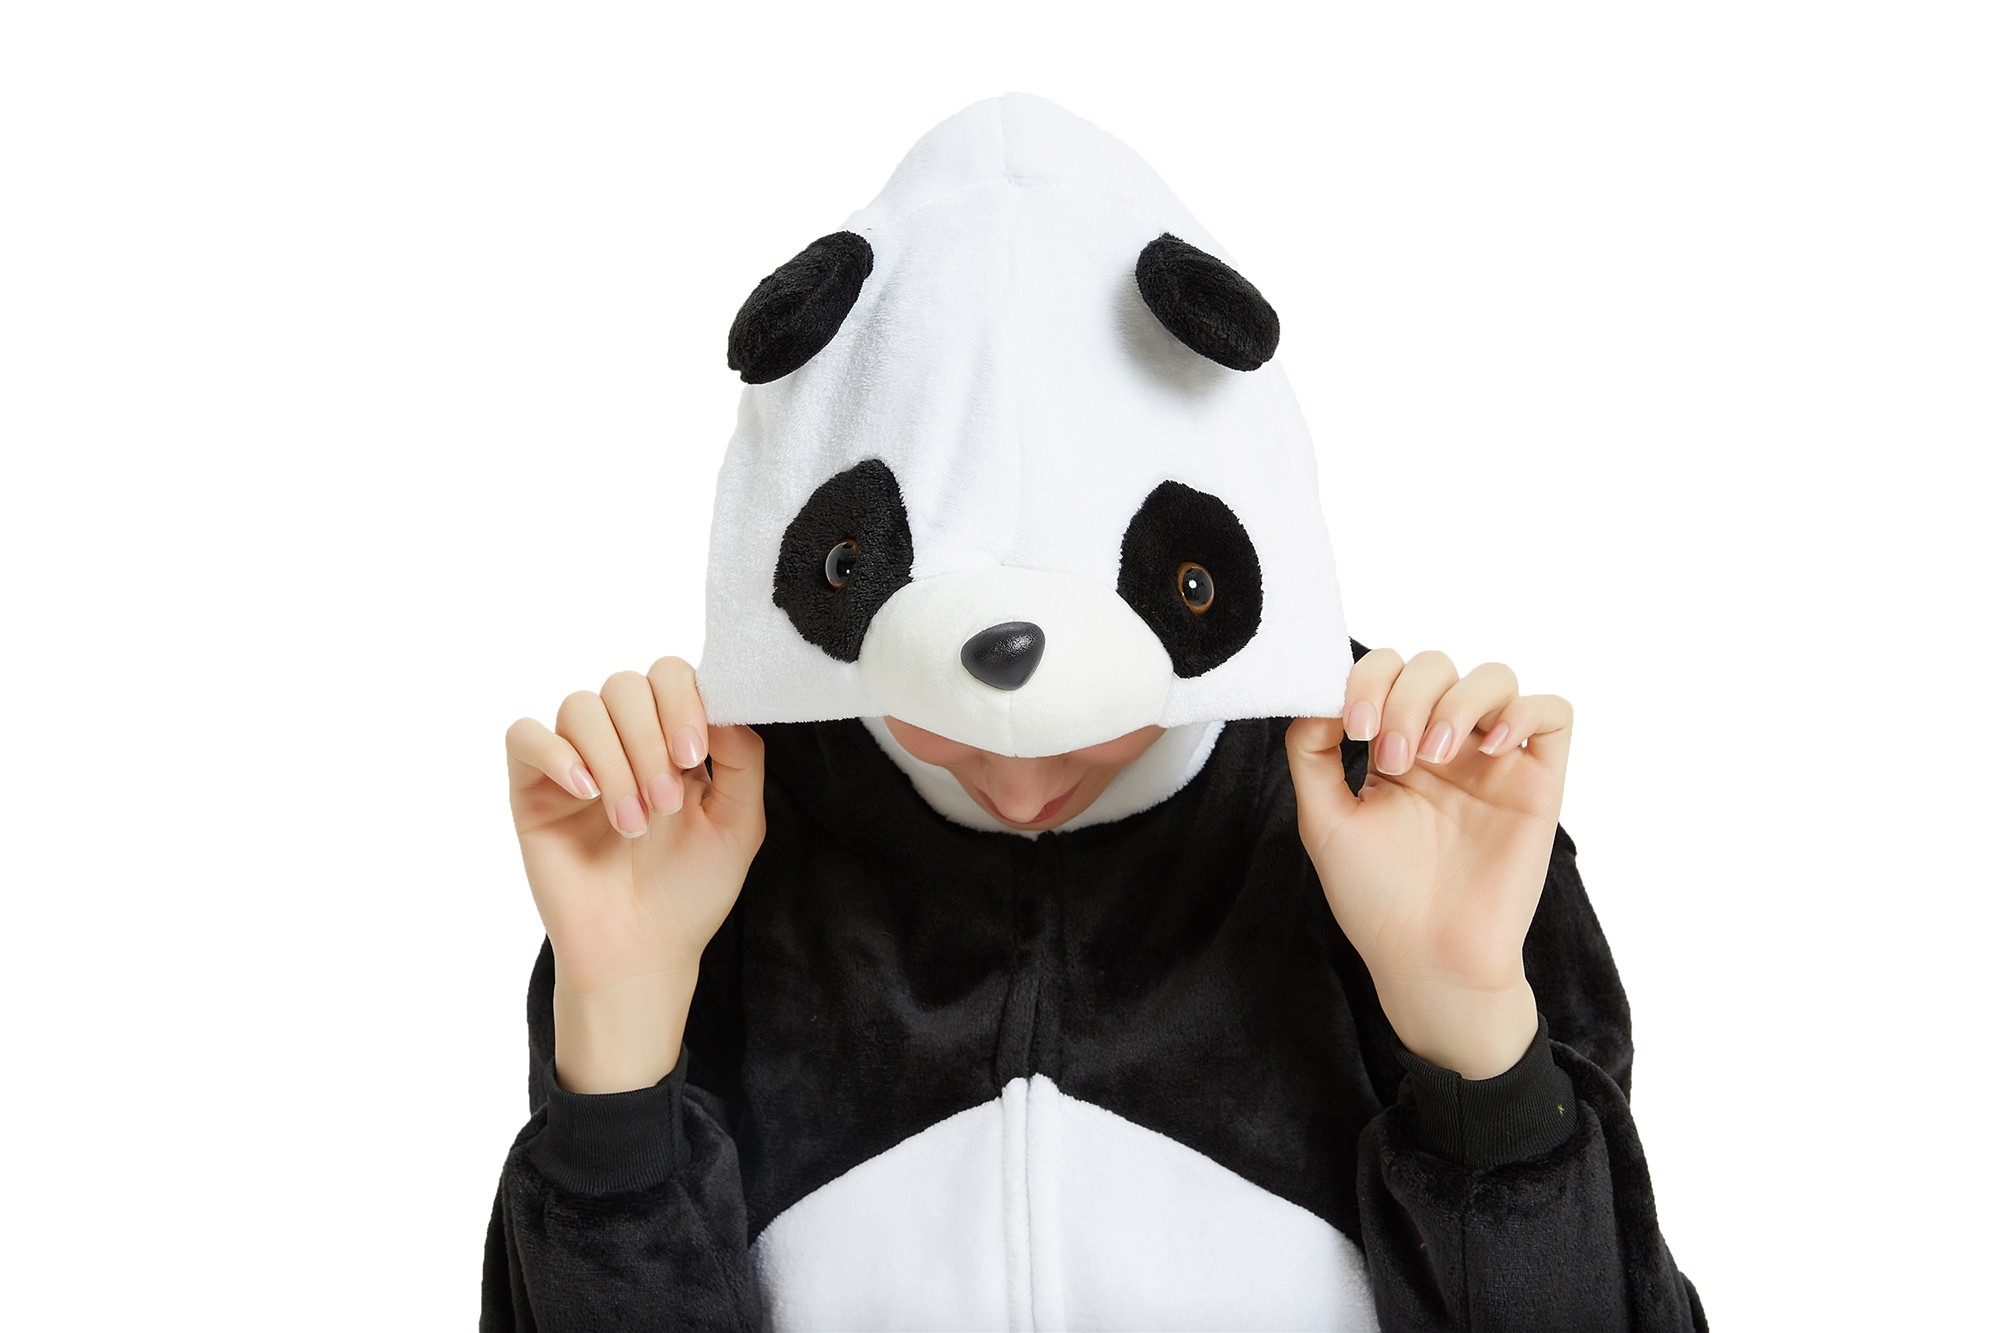 16pcs Animal Onesie Animal Pajamas Halloween Costumes Adult Panda Wholesale Price